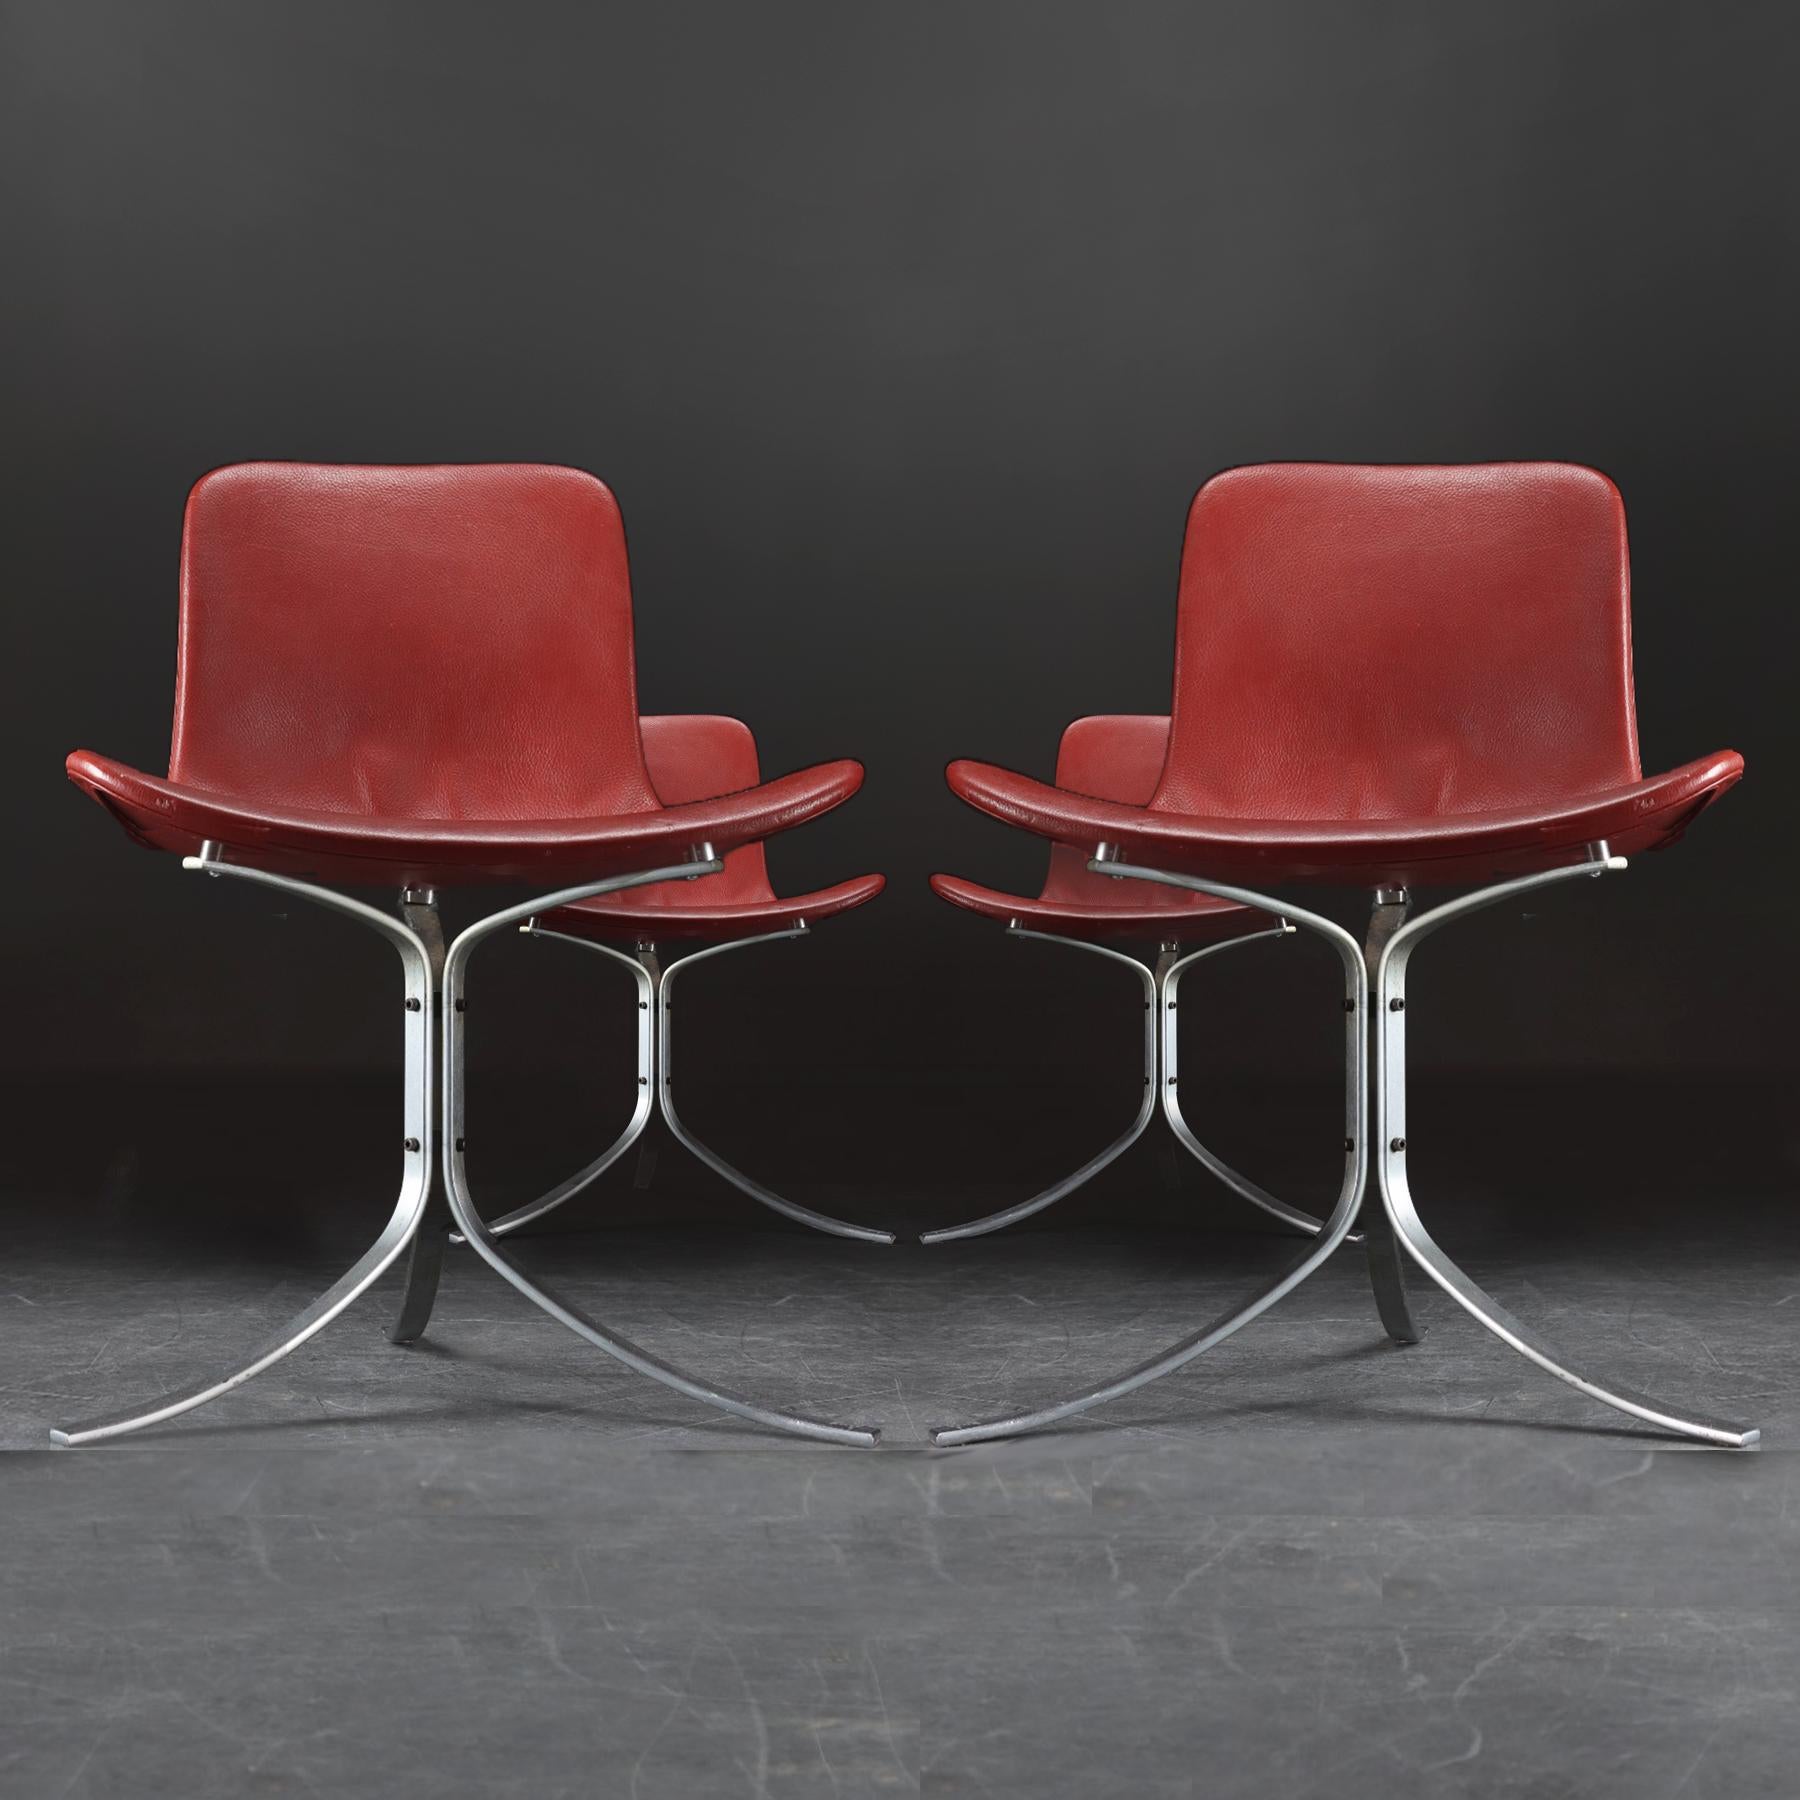 Un ensemble de 4 chaises danoises du milieu du siècle en cuir et acier PK9 conçues par Poul Kjaerholm pour E. Kold Christensen avec des extensions de hauteur d'assise optionnelles sur mesure.

Il s'agit d'un ensemble de chaises magnifiquement